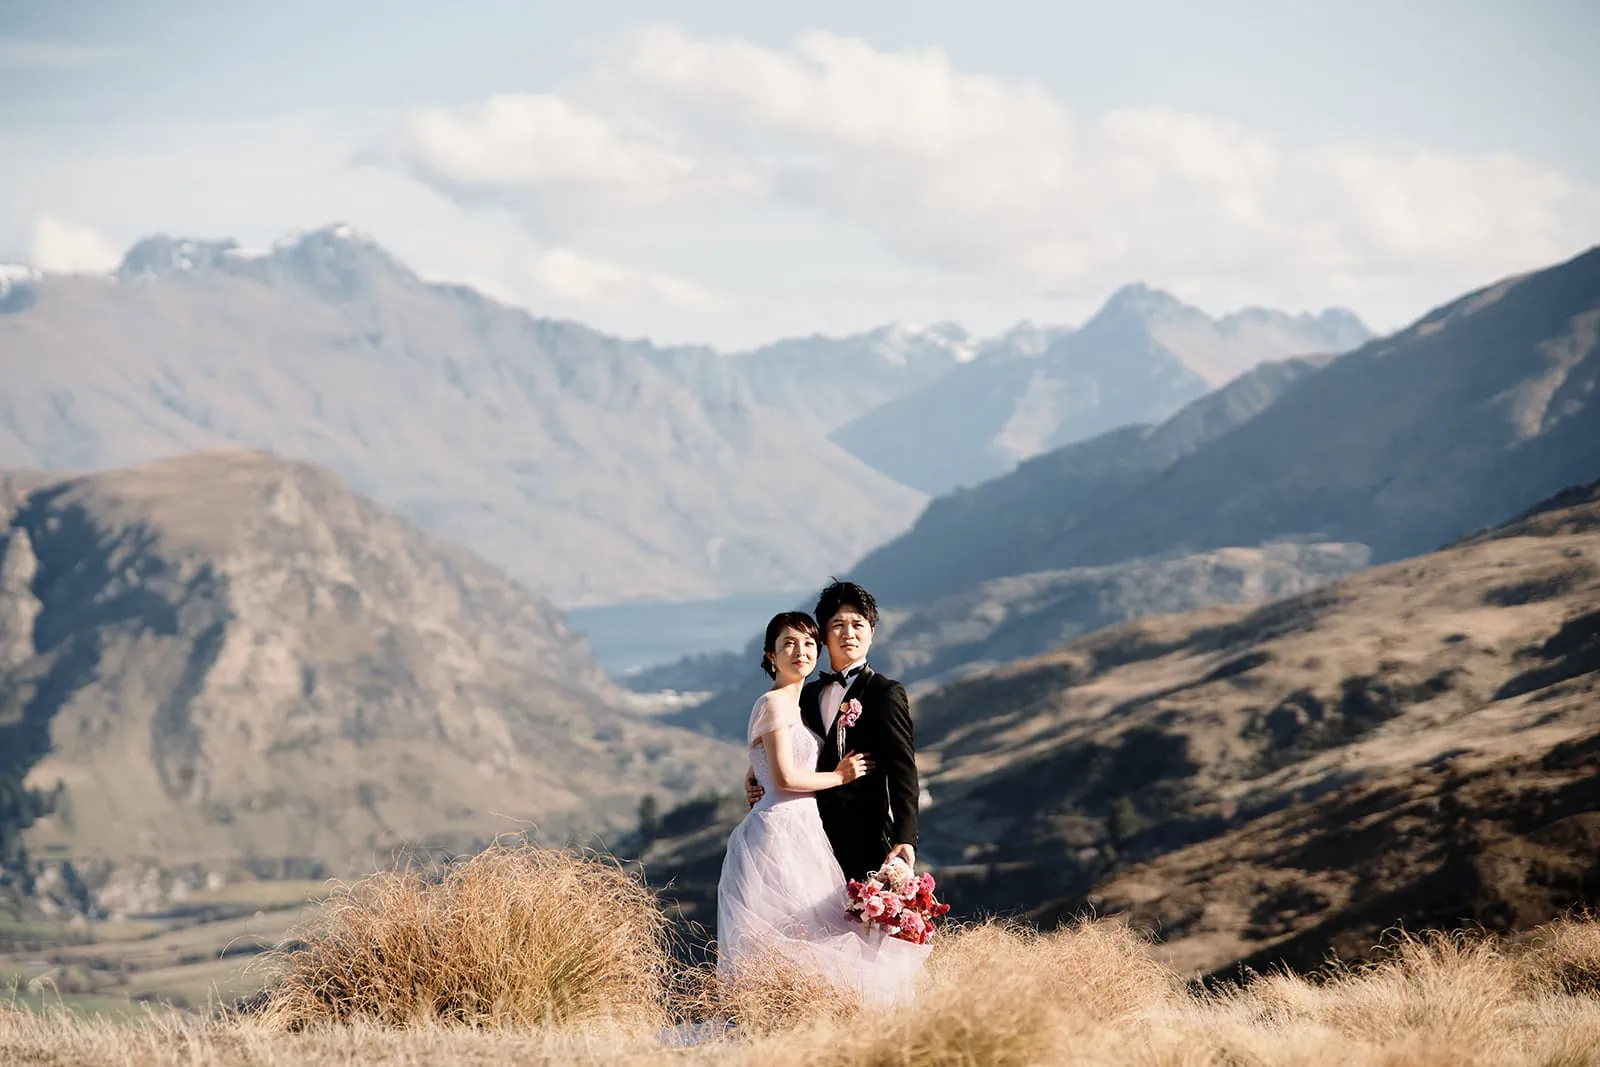 Queenstown New Zealand Elopement Wedding Photographer - A summer bride and groom standing in front of a mountain in Queenstown, New Zealand.